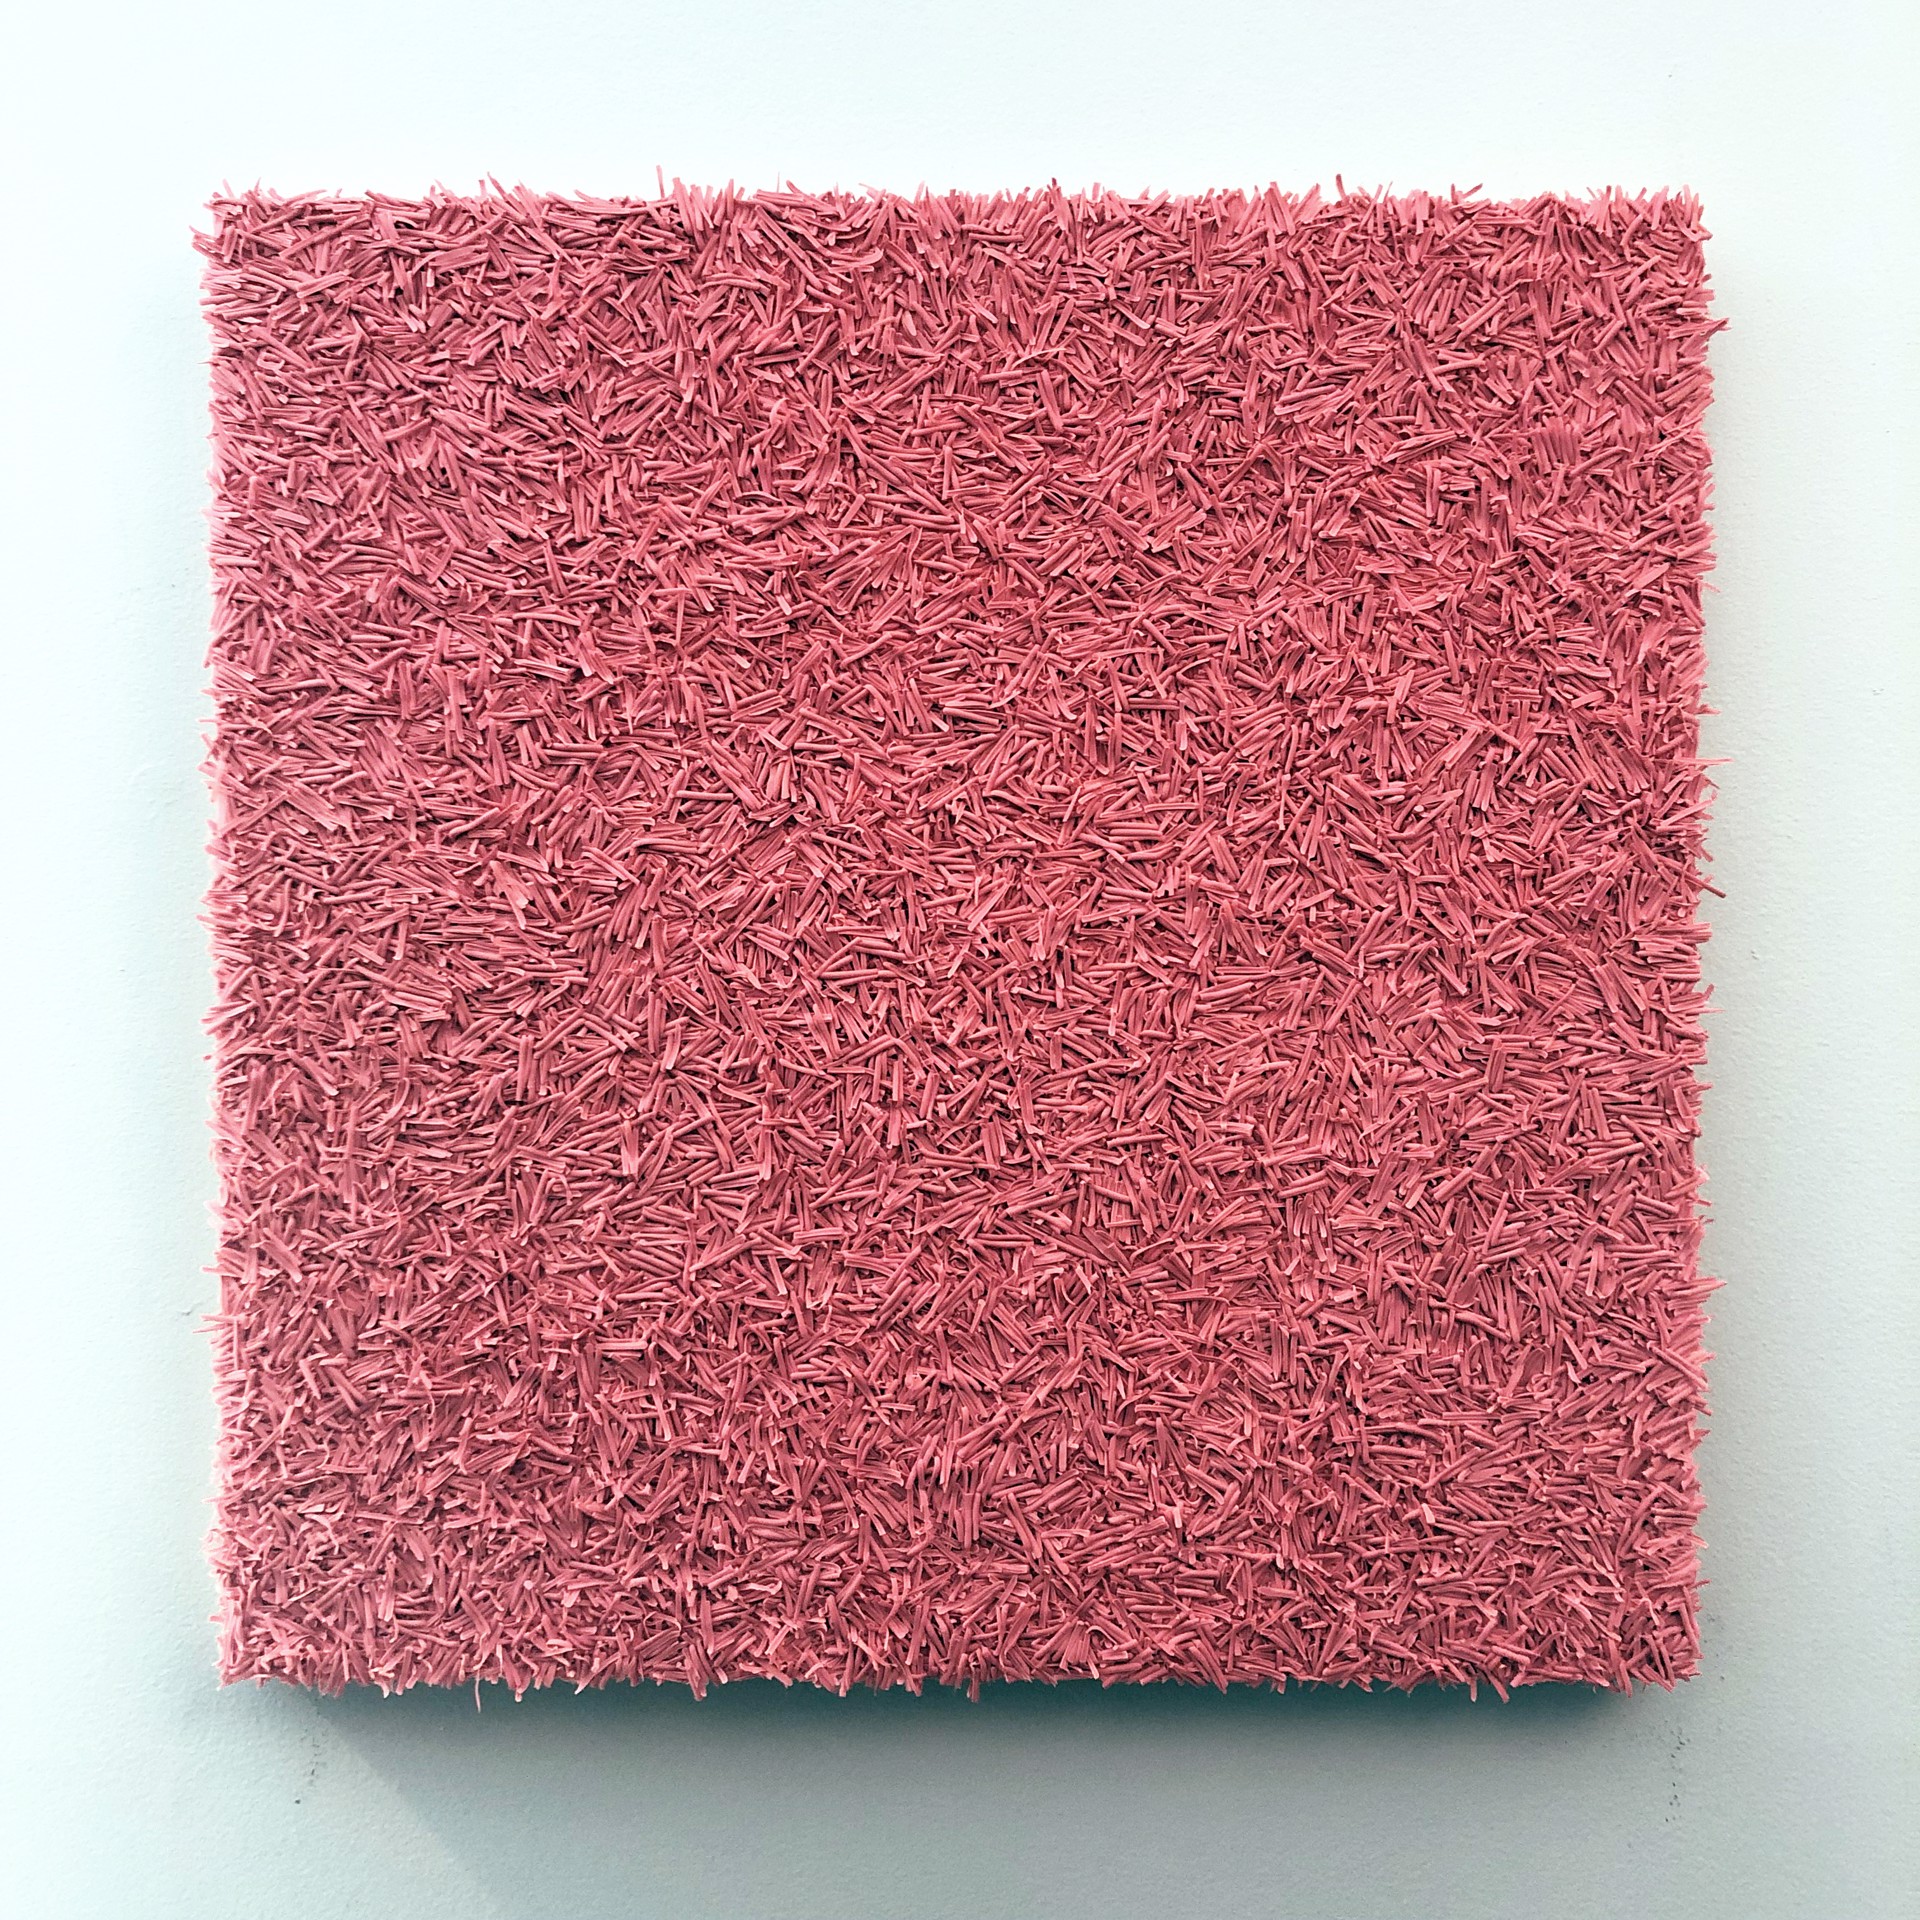 Eraser by Evan Stoler